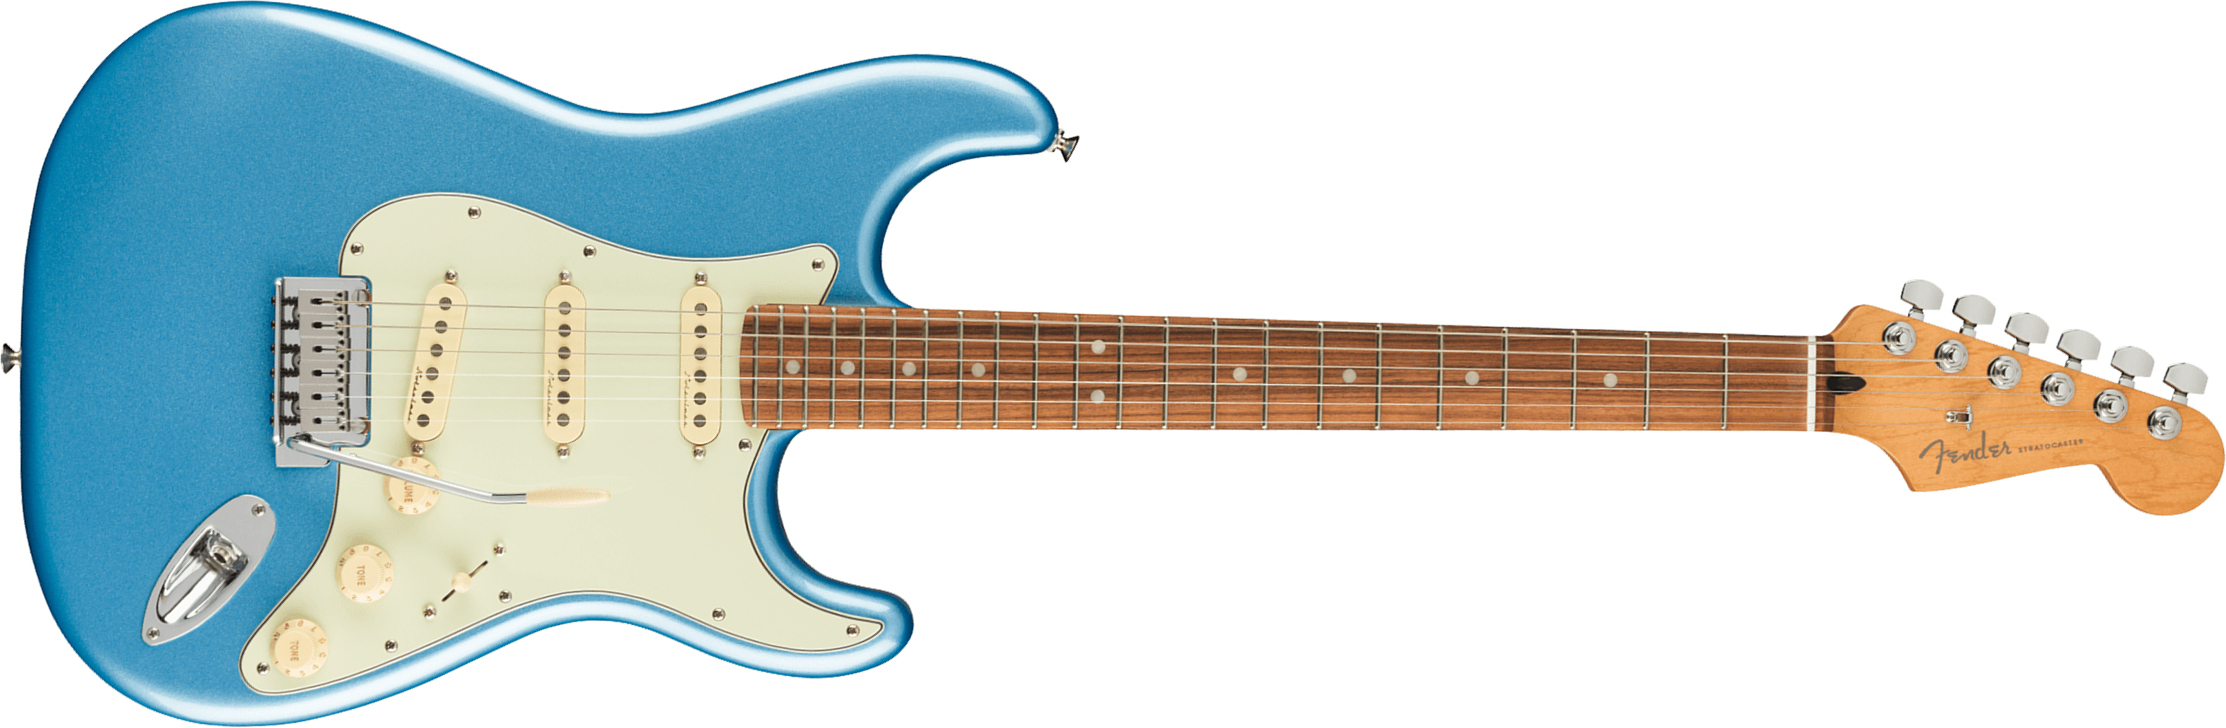 Fender Strat Player Plus Mex 3s Trem Pf - Opal Spark - Str shape electric guitar - Main picture